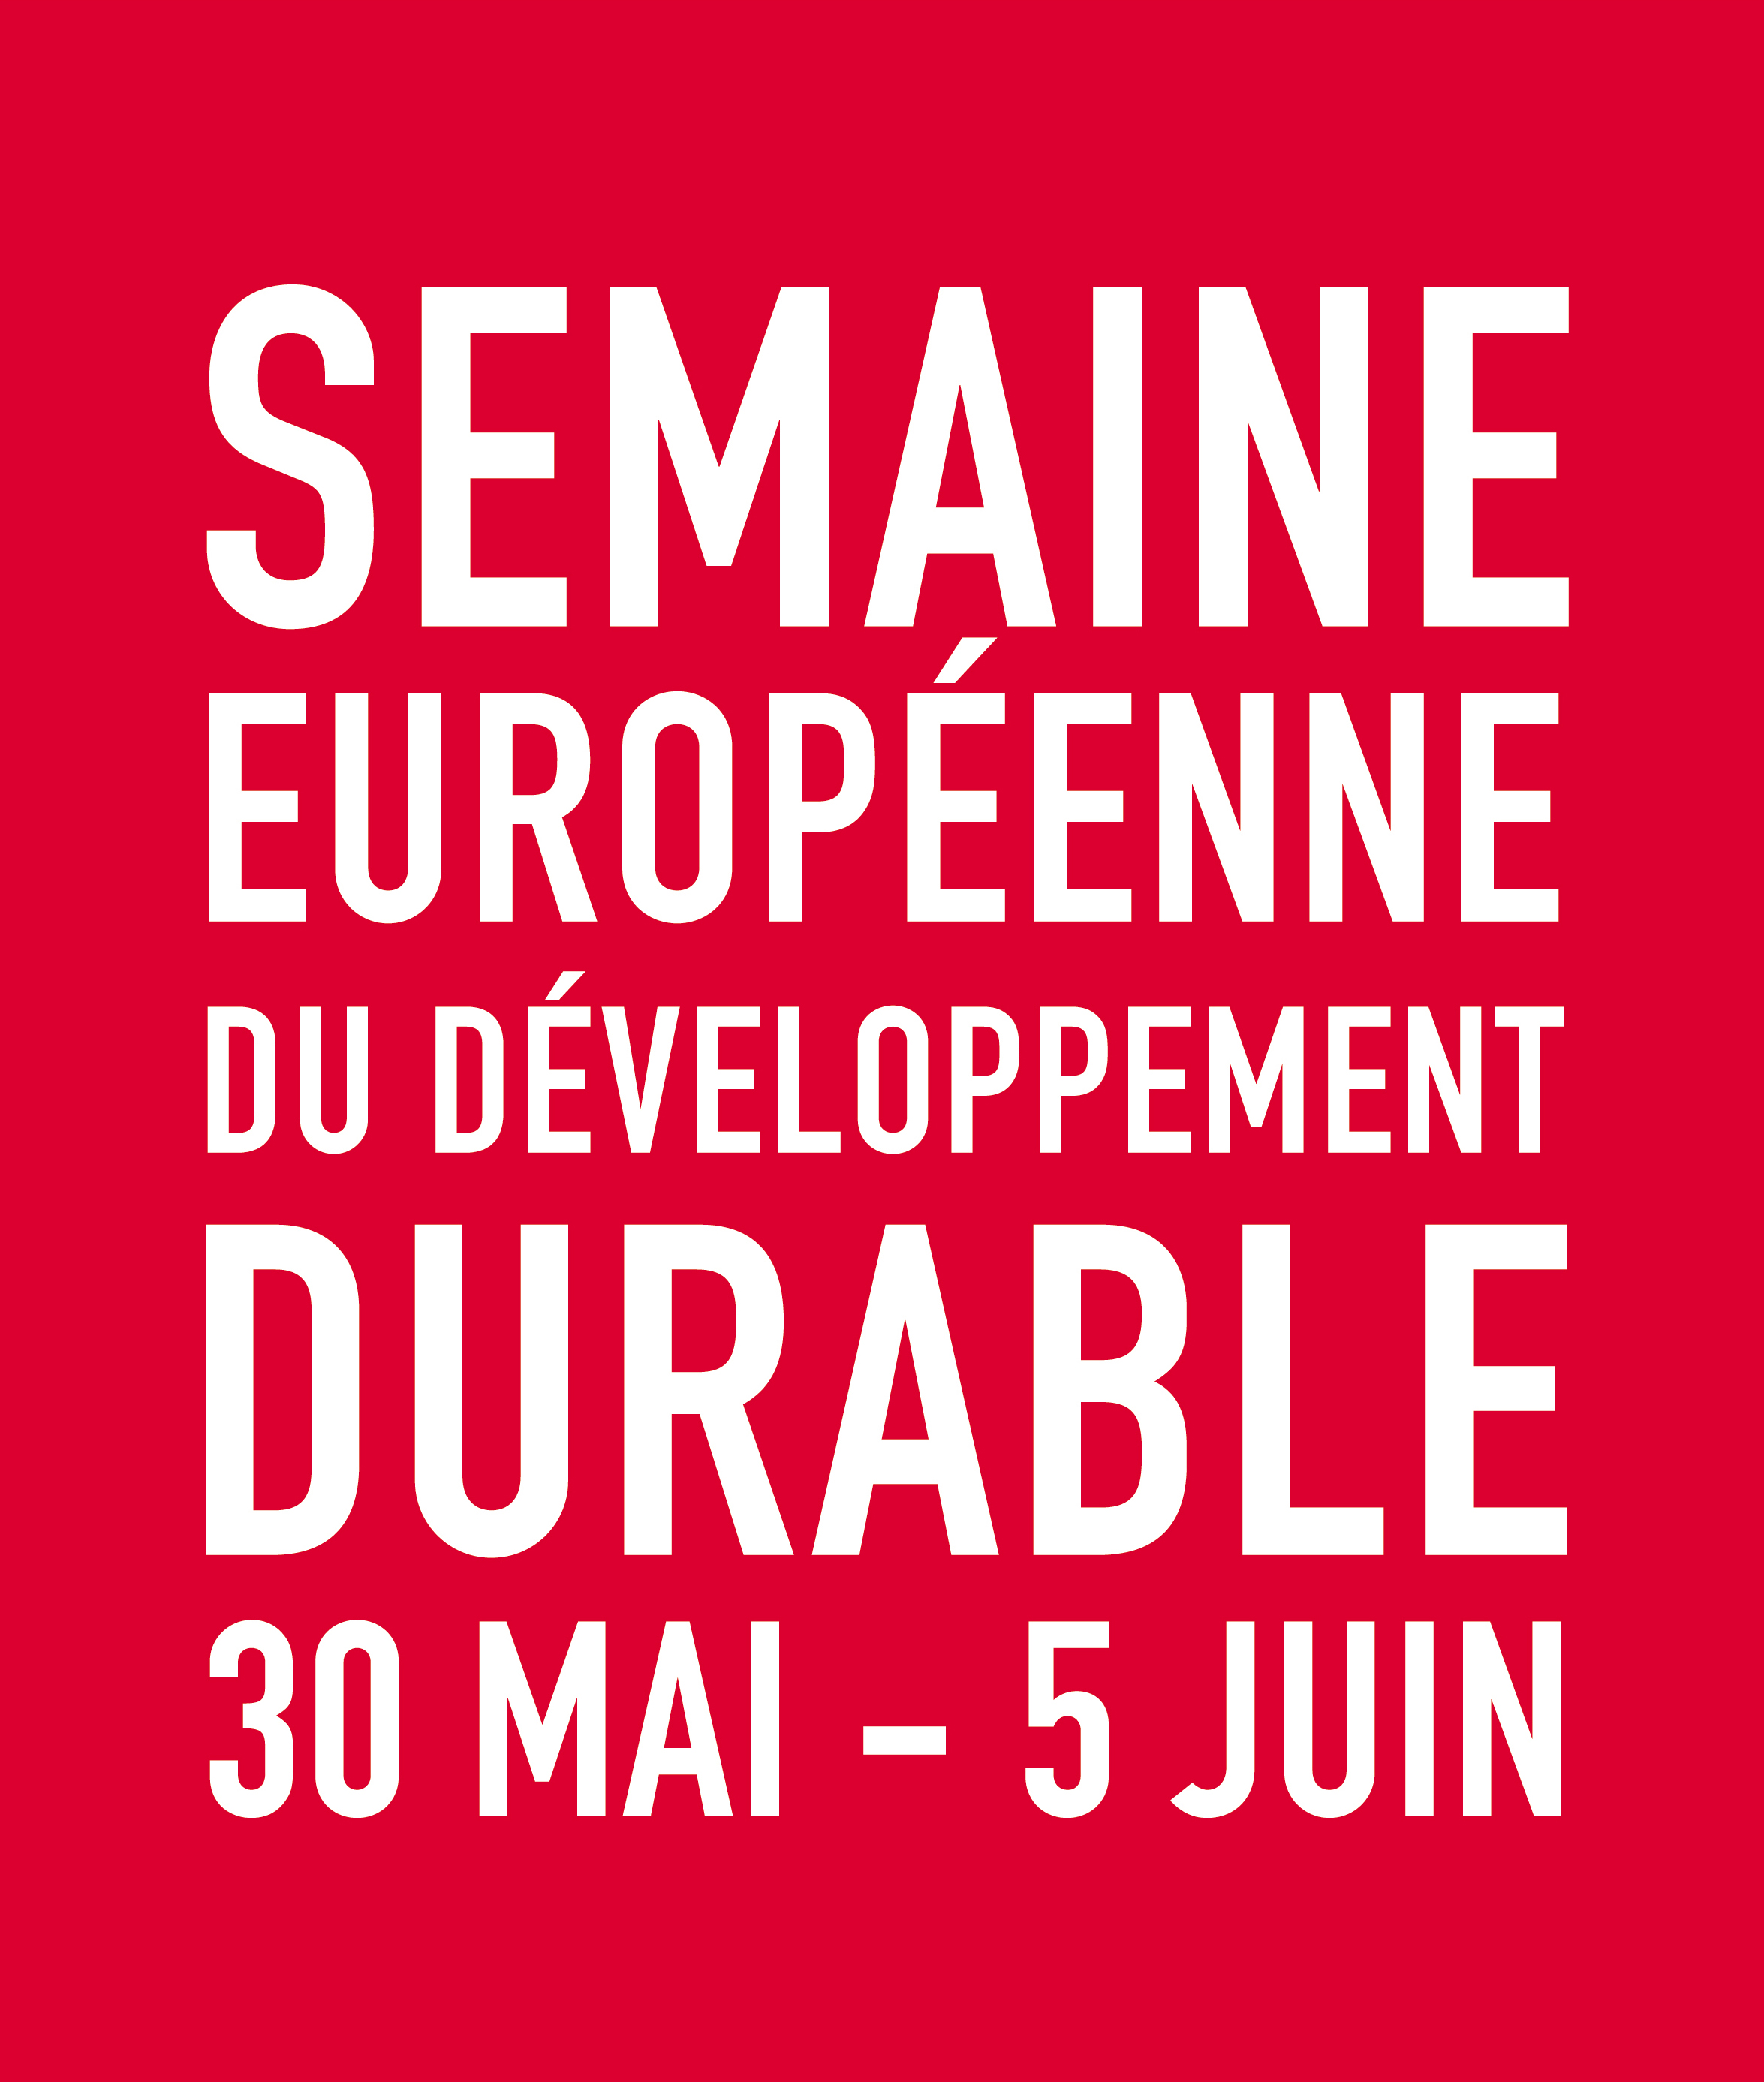 Semaine européenne du développement durable 2015 : appel à projets